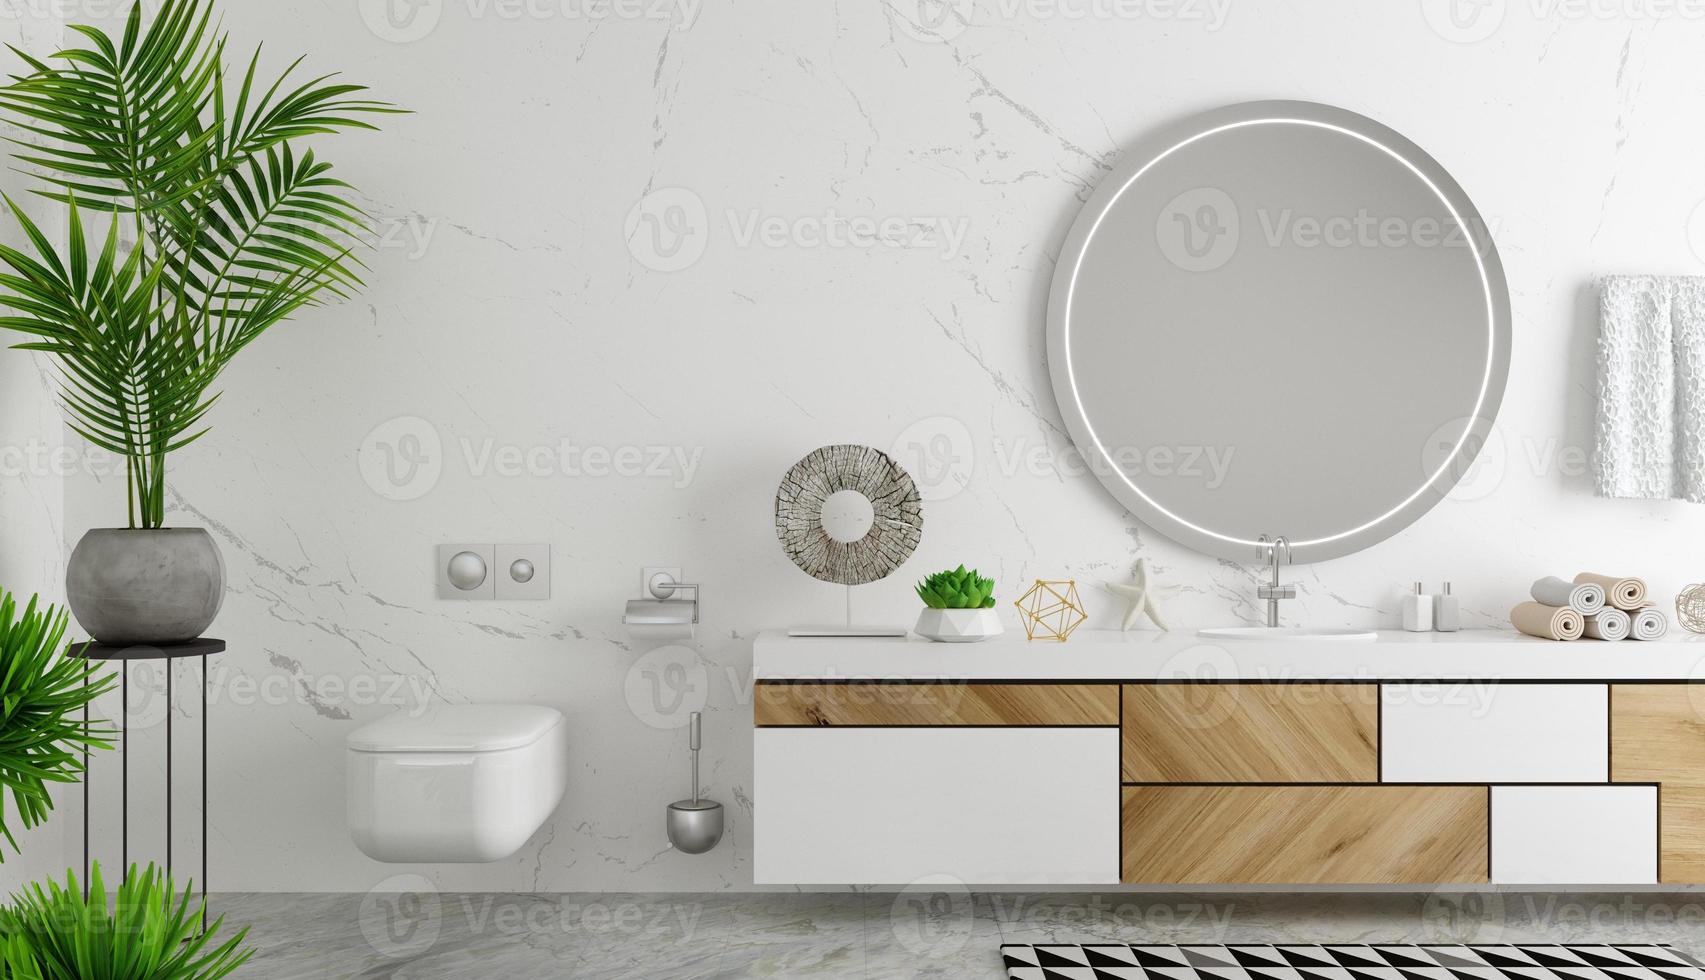 modernes badezimmerinterieur im skandinavischen stil kommode foto